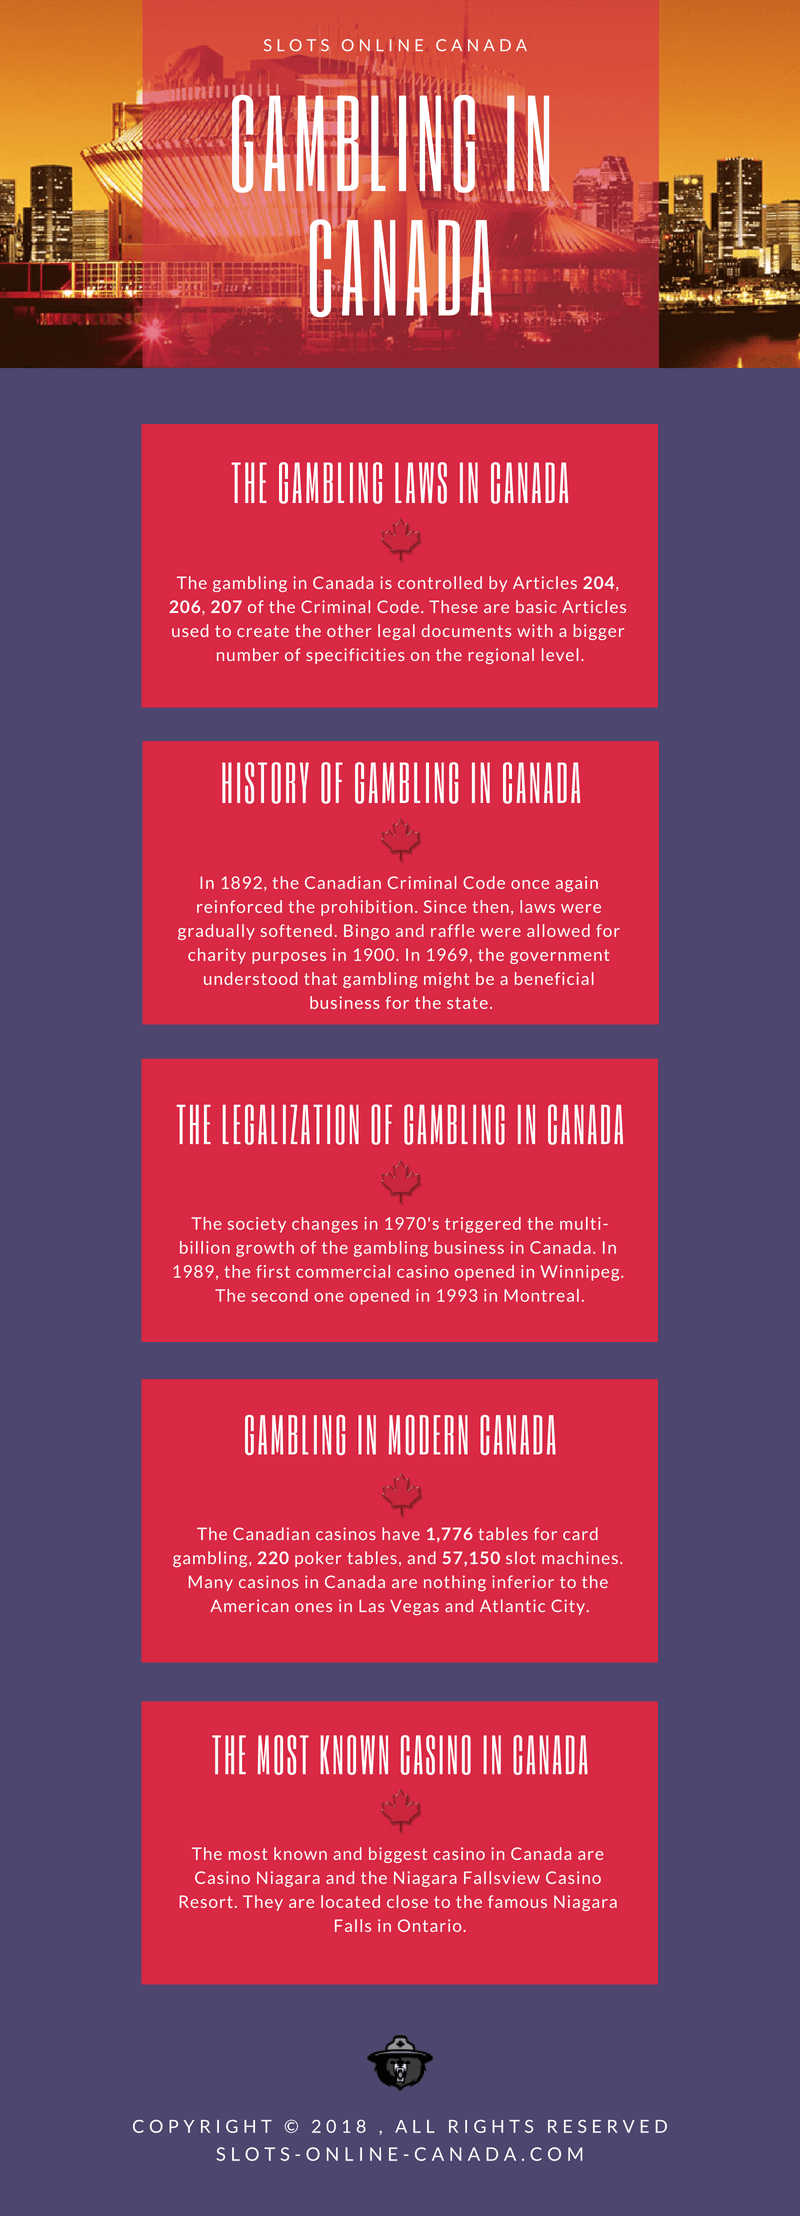 casino gambling Canada Games Slots history LAWS